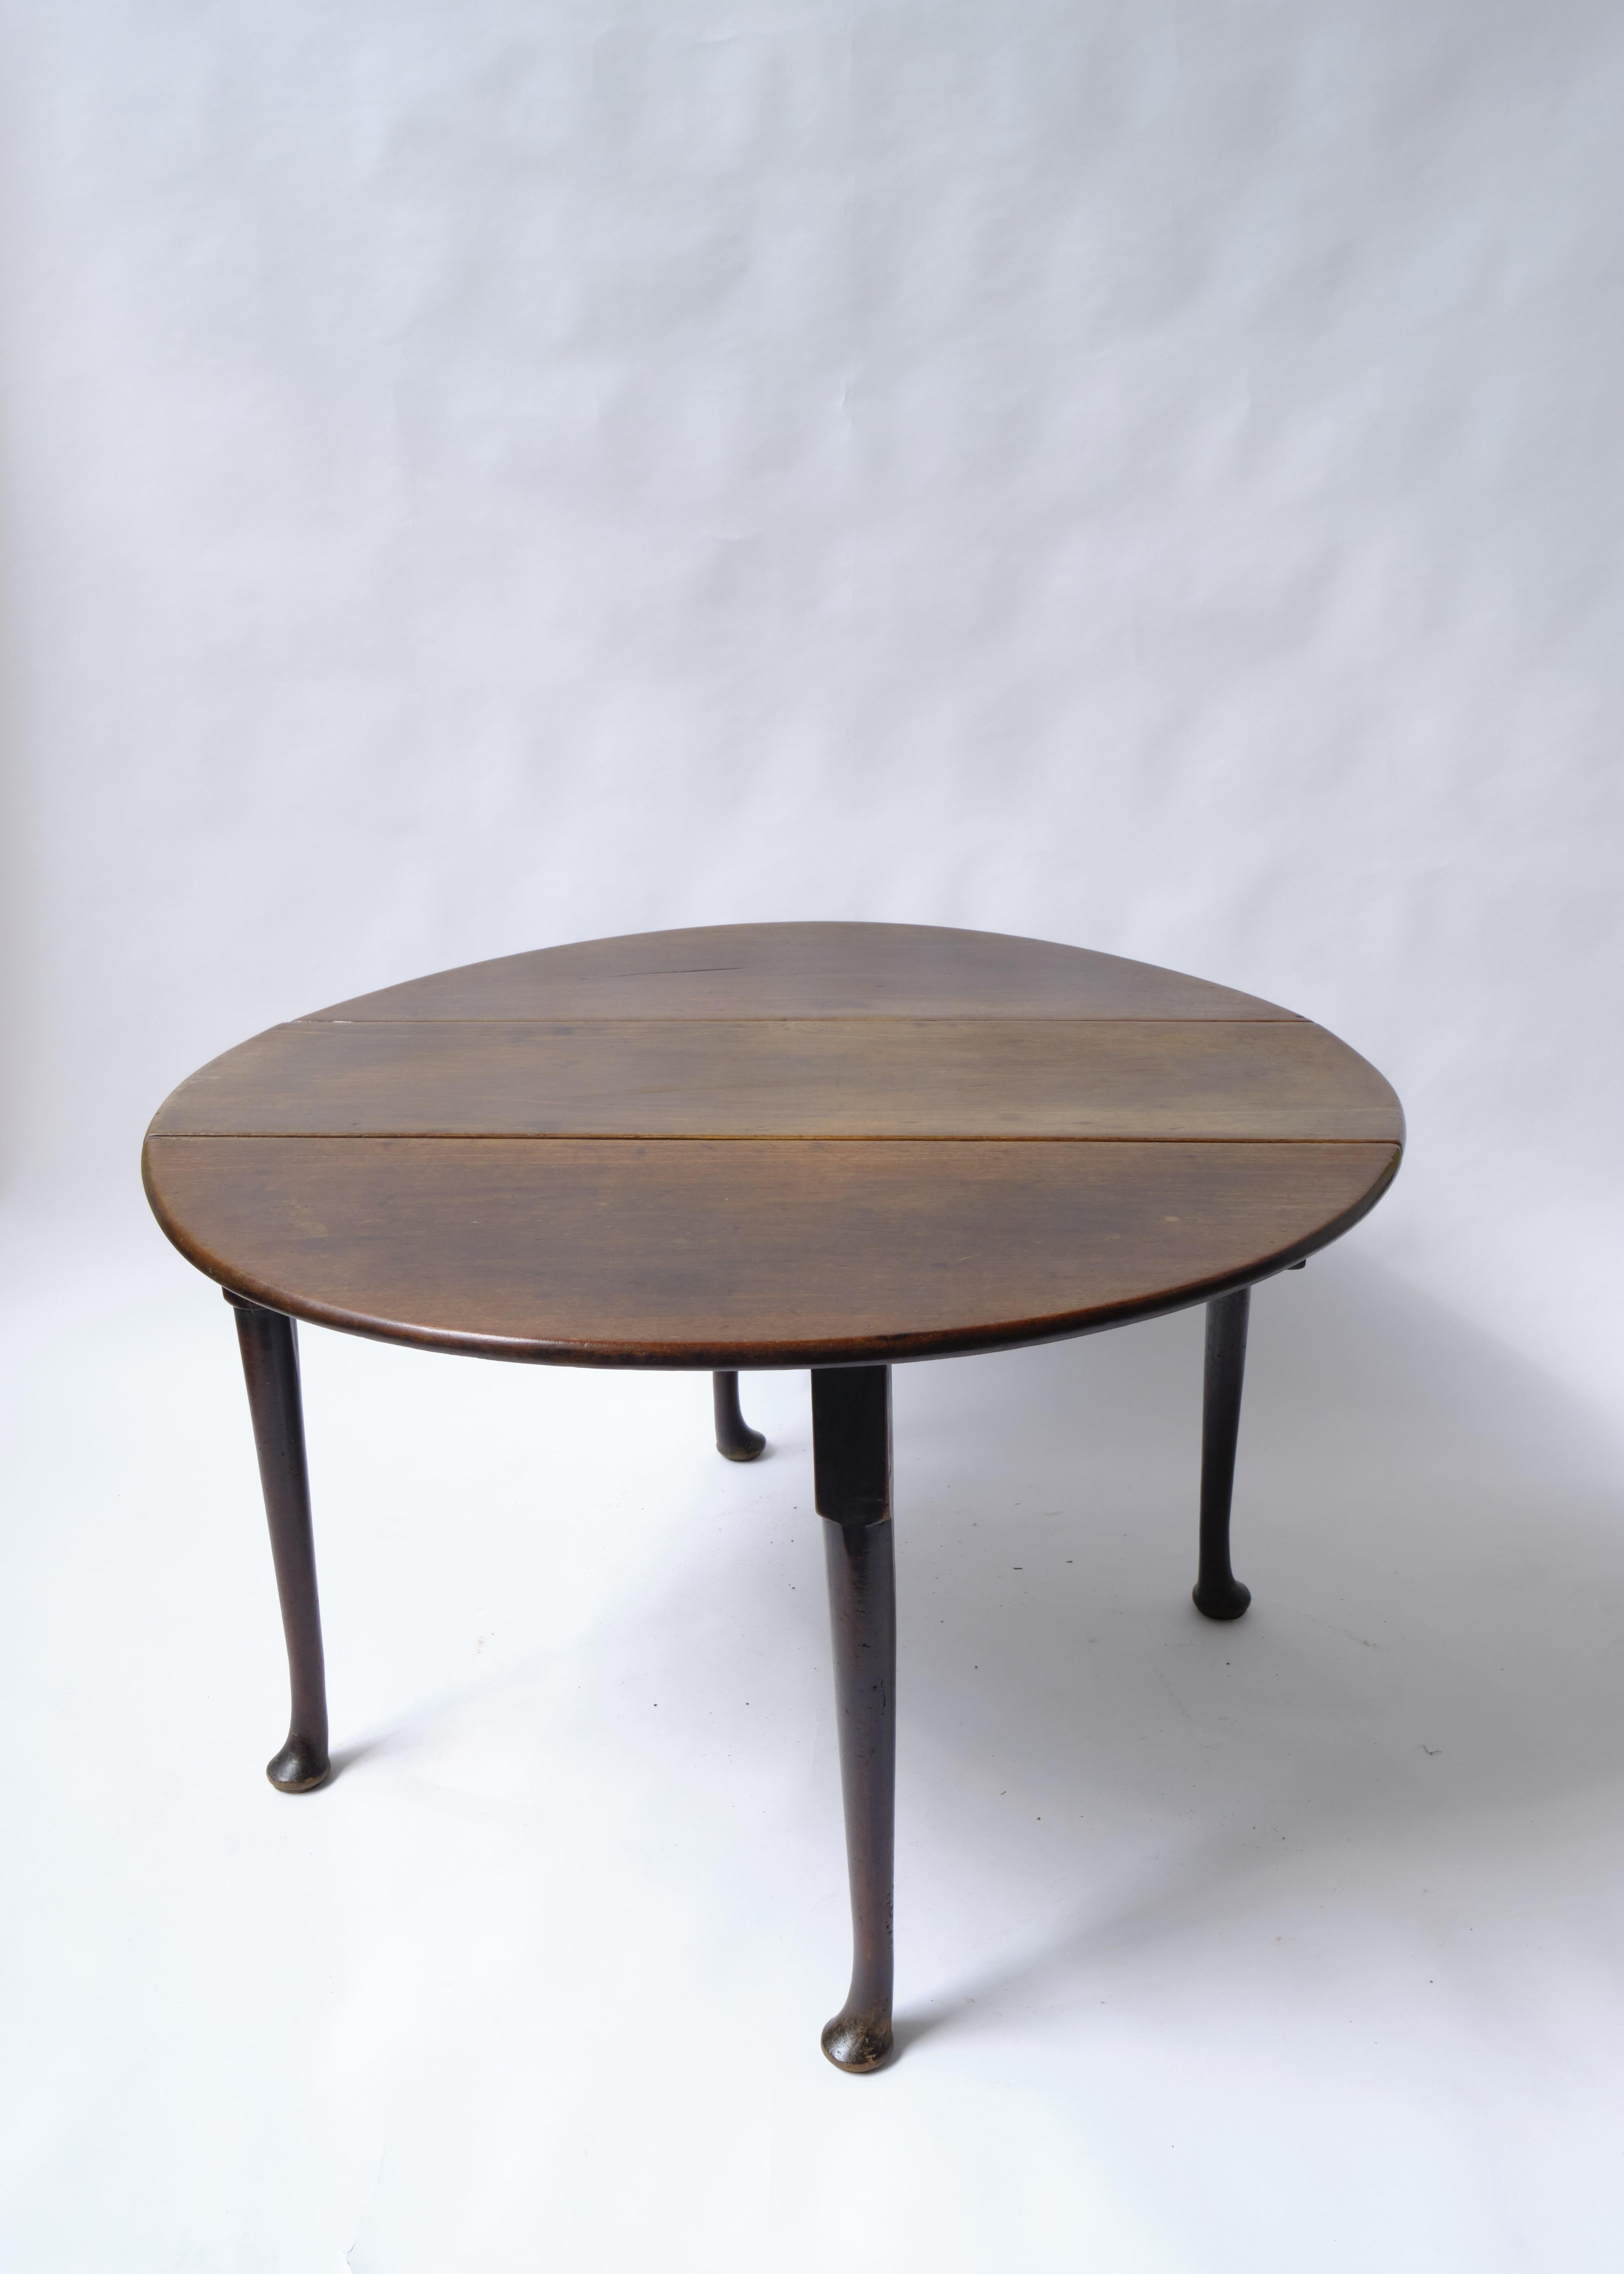 Englisch, ca. 1760.

Ovaler georgianischer Frühstückstisch mit Klappe.

Mit zwei Klappseiten, die sich hochklappen lassen und von aufklappbaren, massiven Mahagoni-Türbeinen gestützt werden. So entsteht eine große, leicht ovale Tischplatte, die Platz